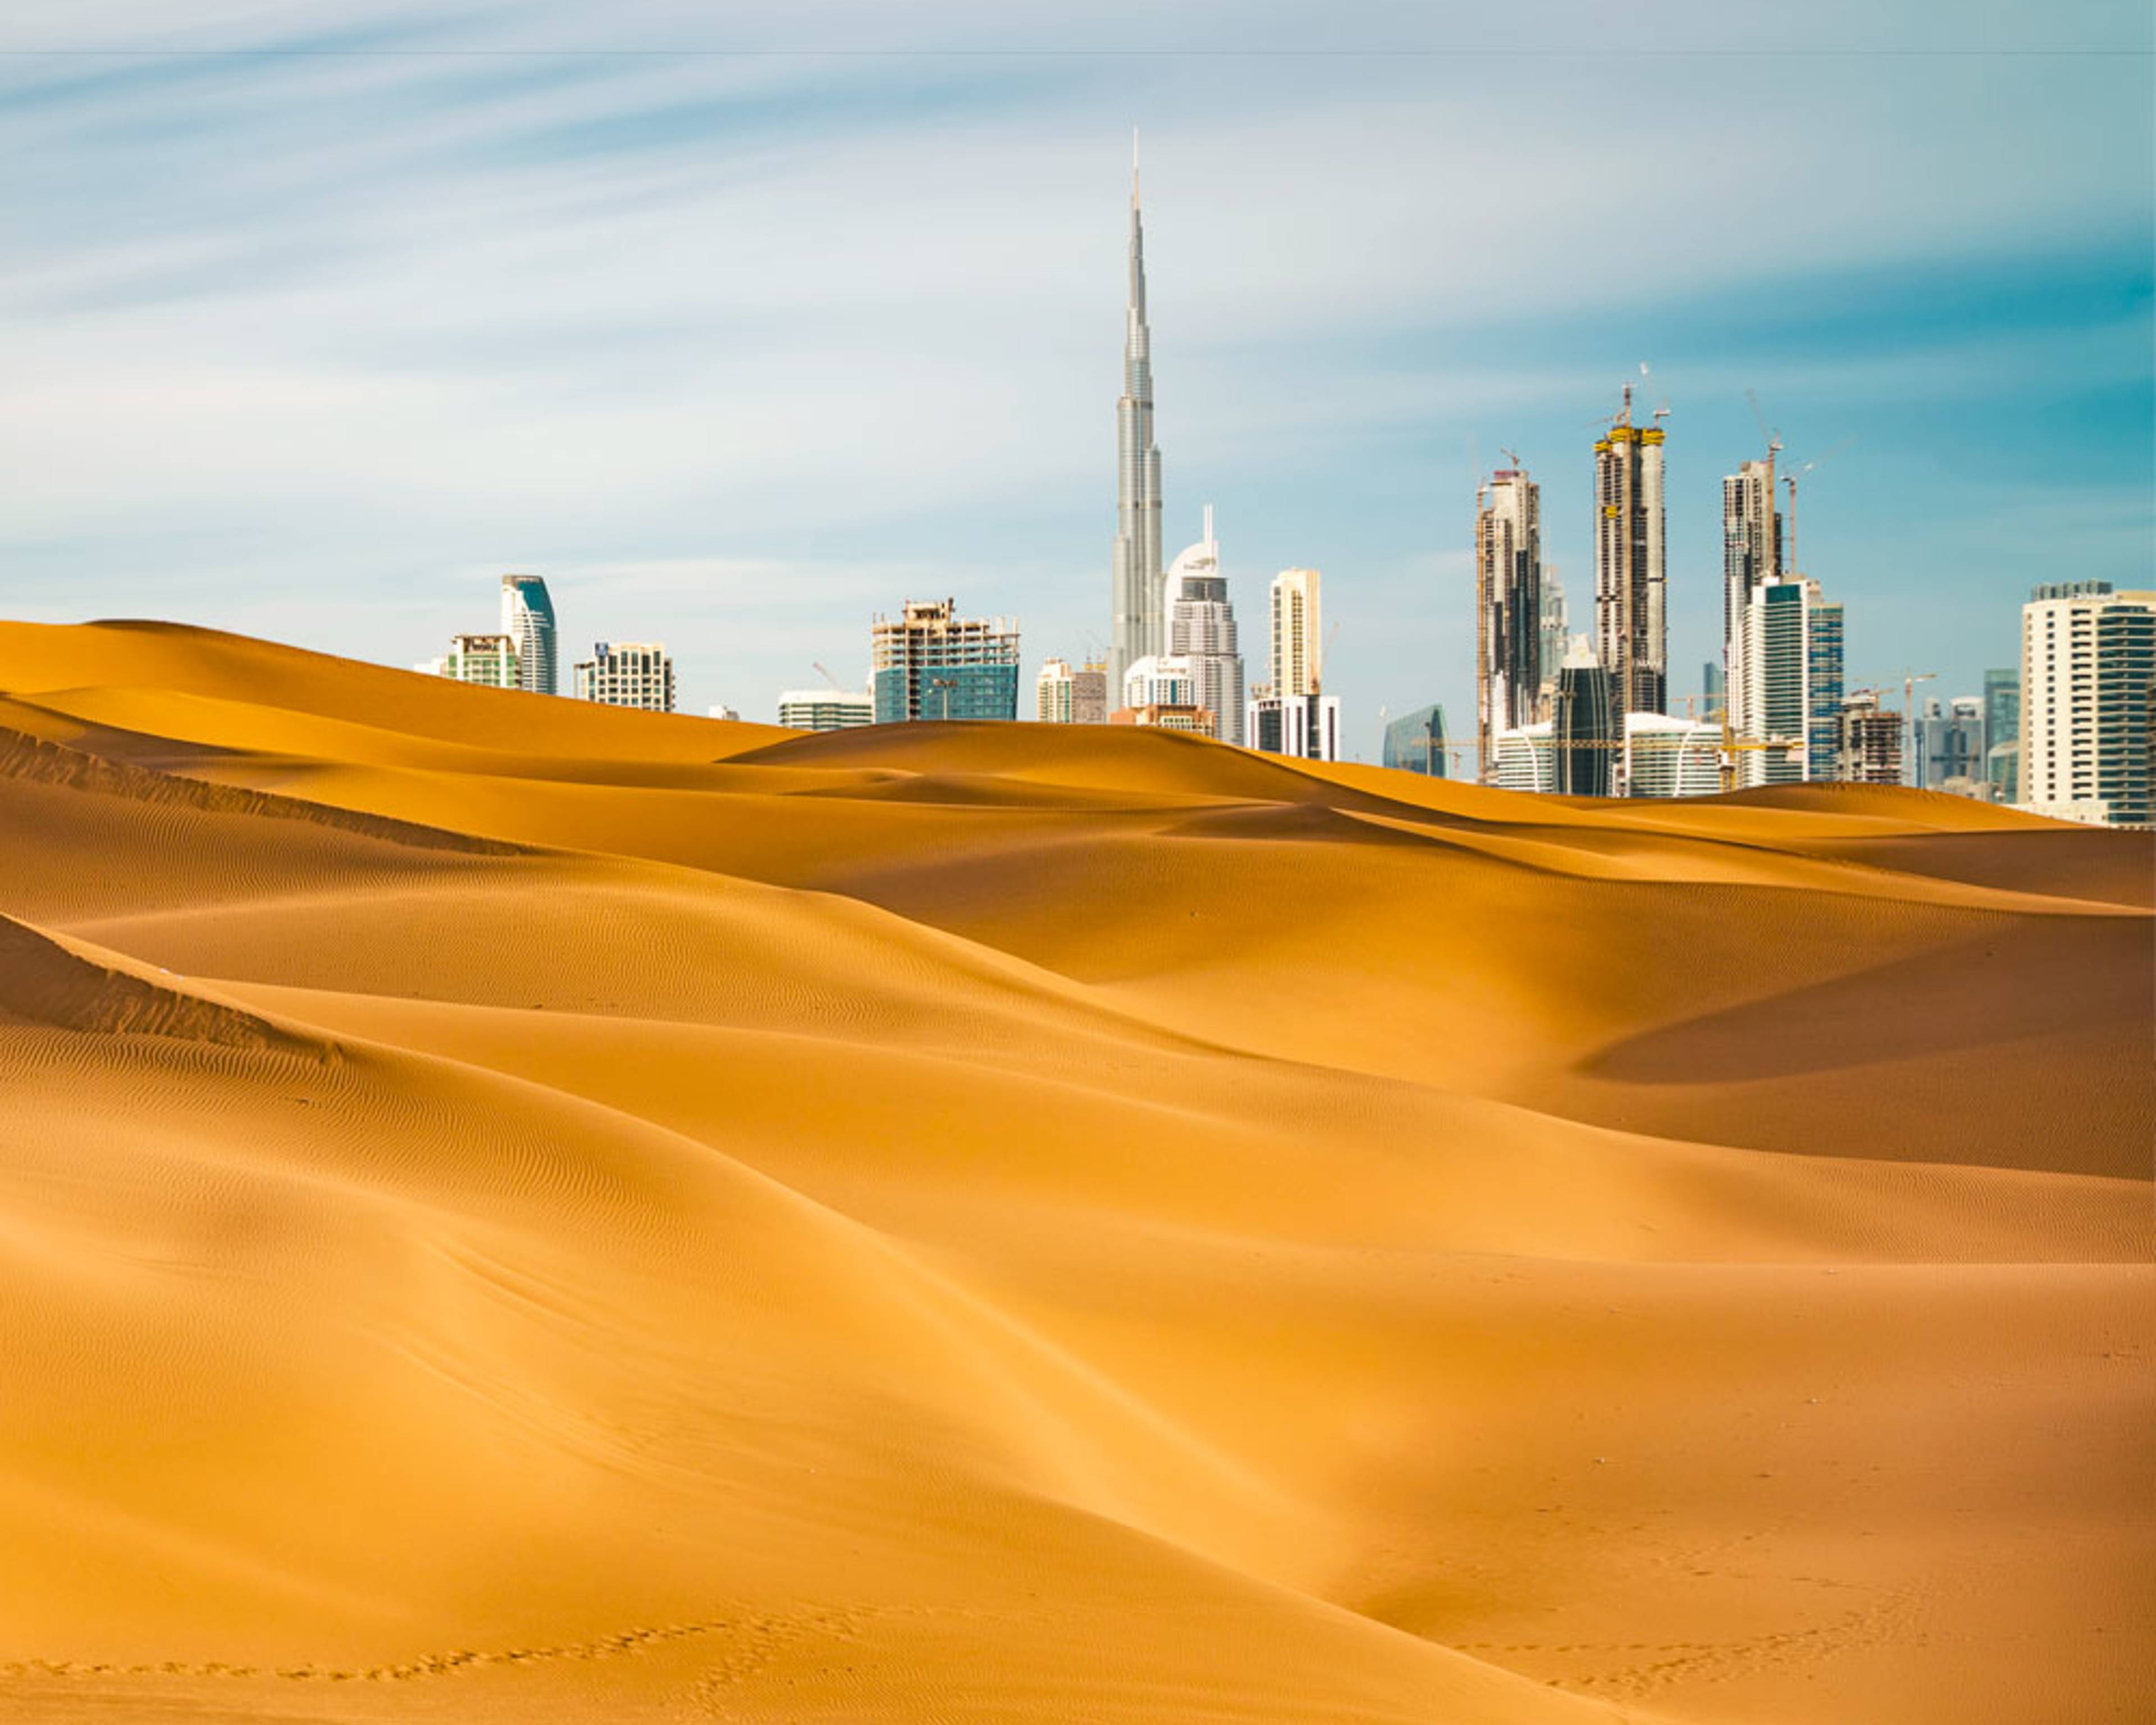 Crea il tuo viaggio su misura nel deserto a Dubai